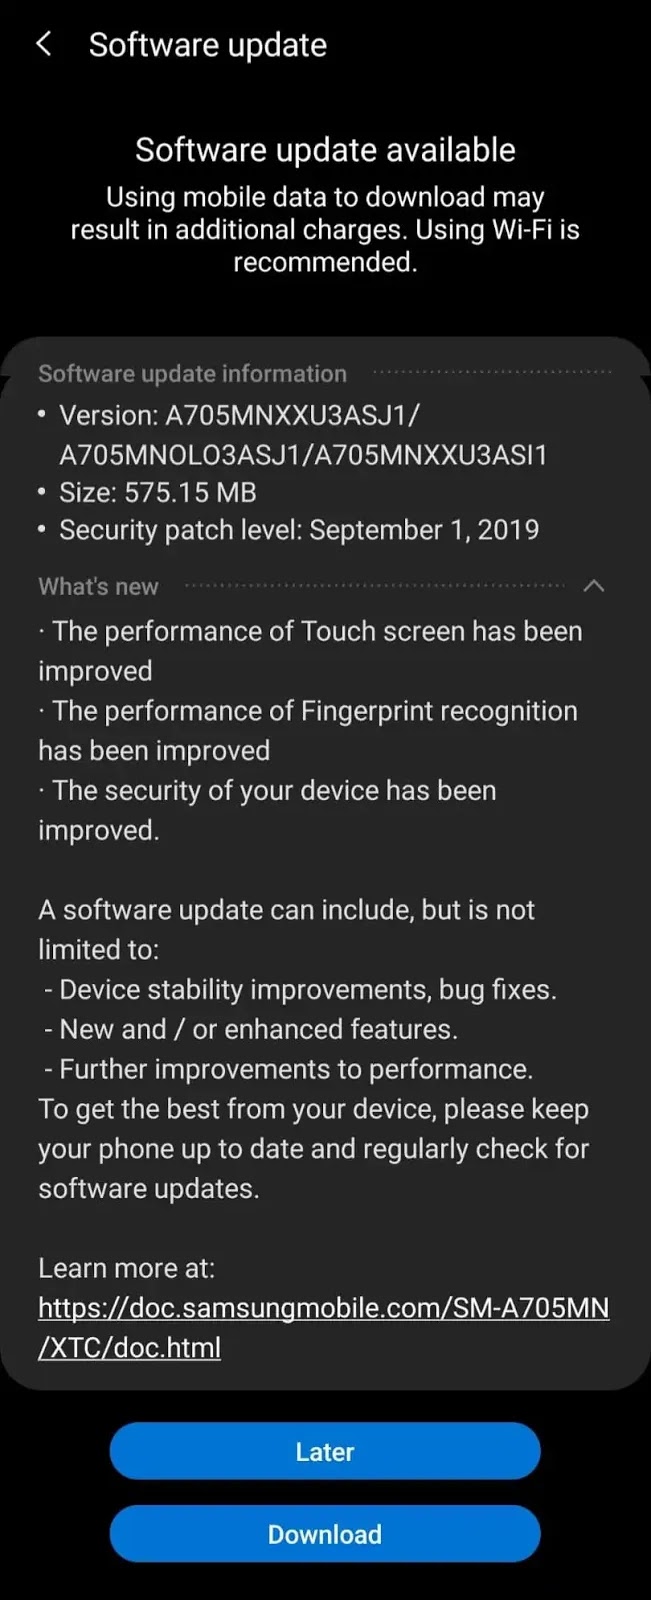 Samsung Galaxy A70 PH September 2019 Software Update